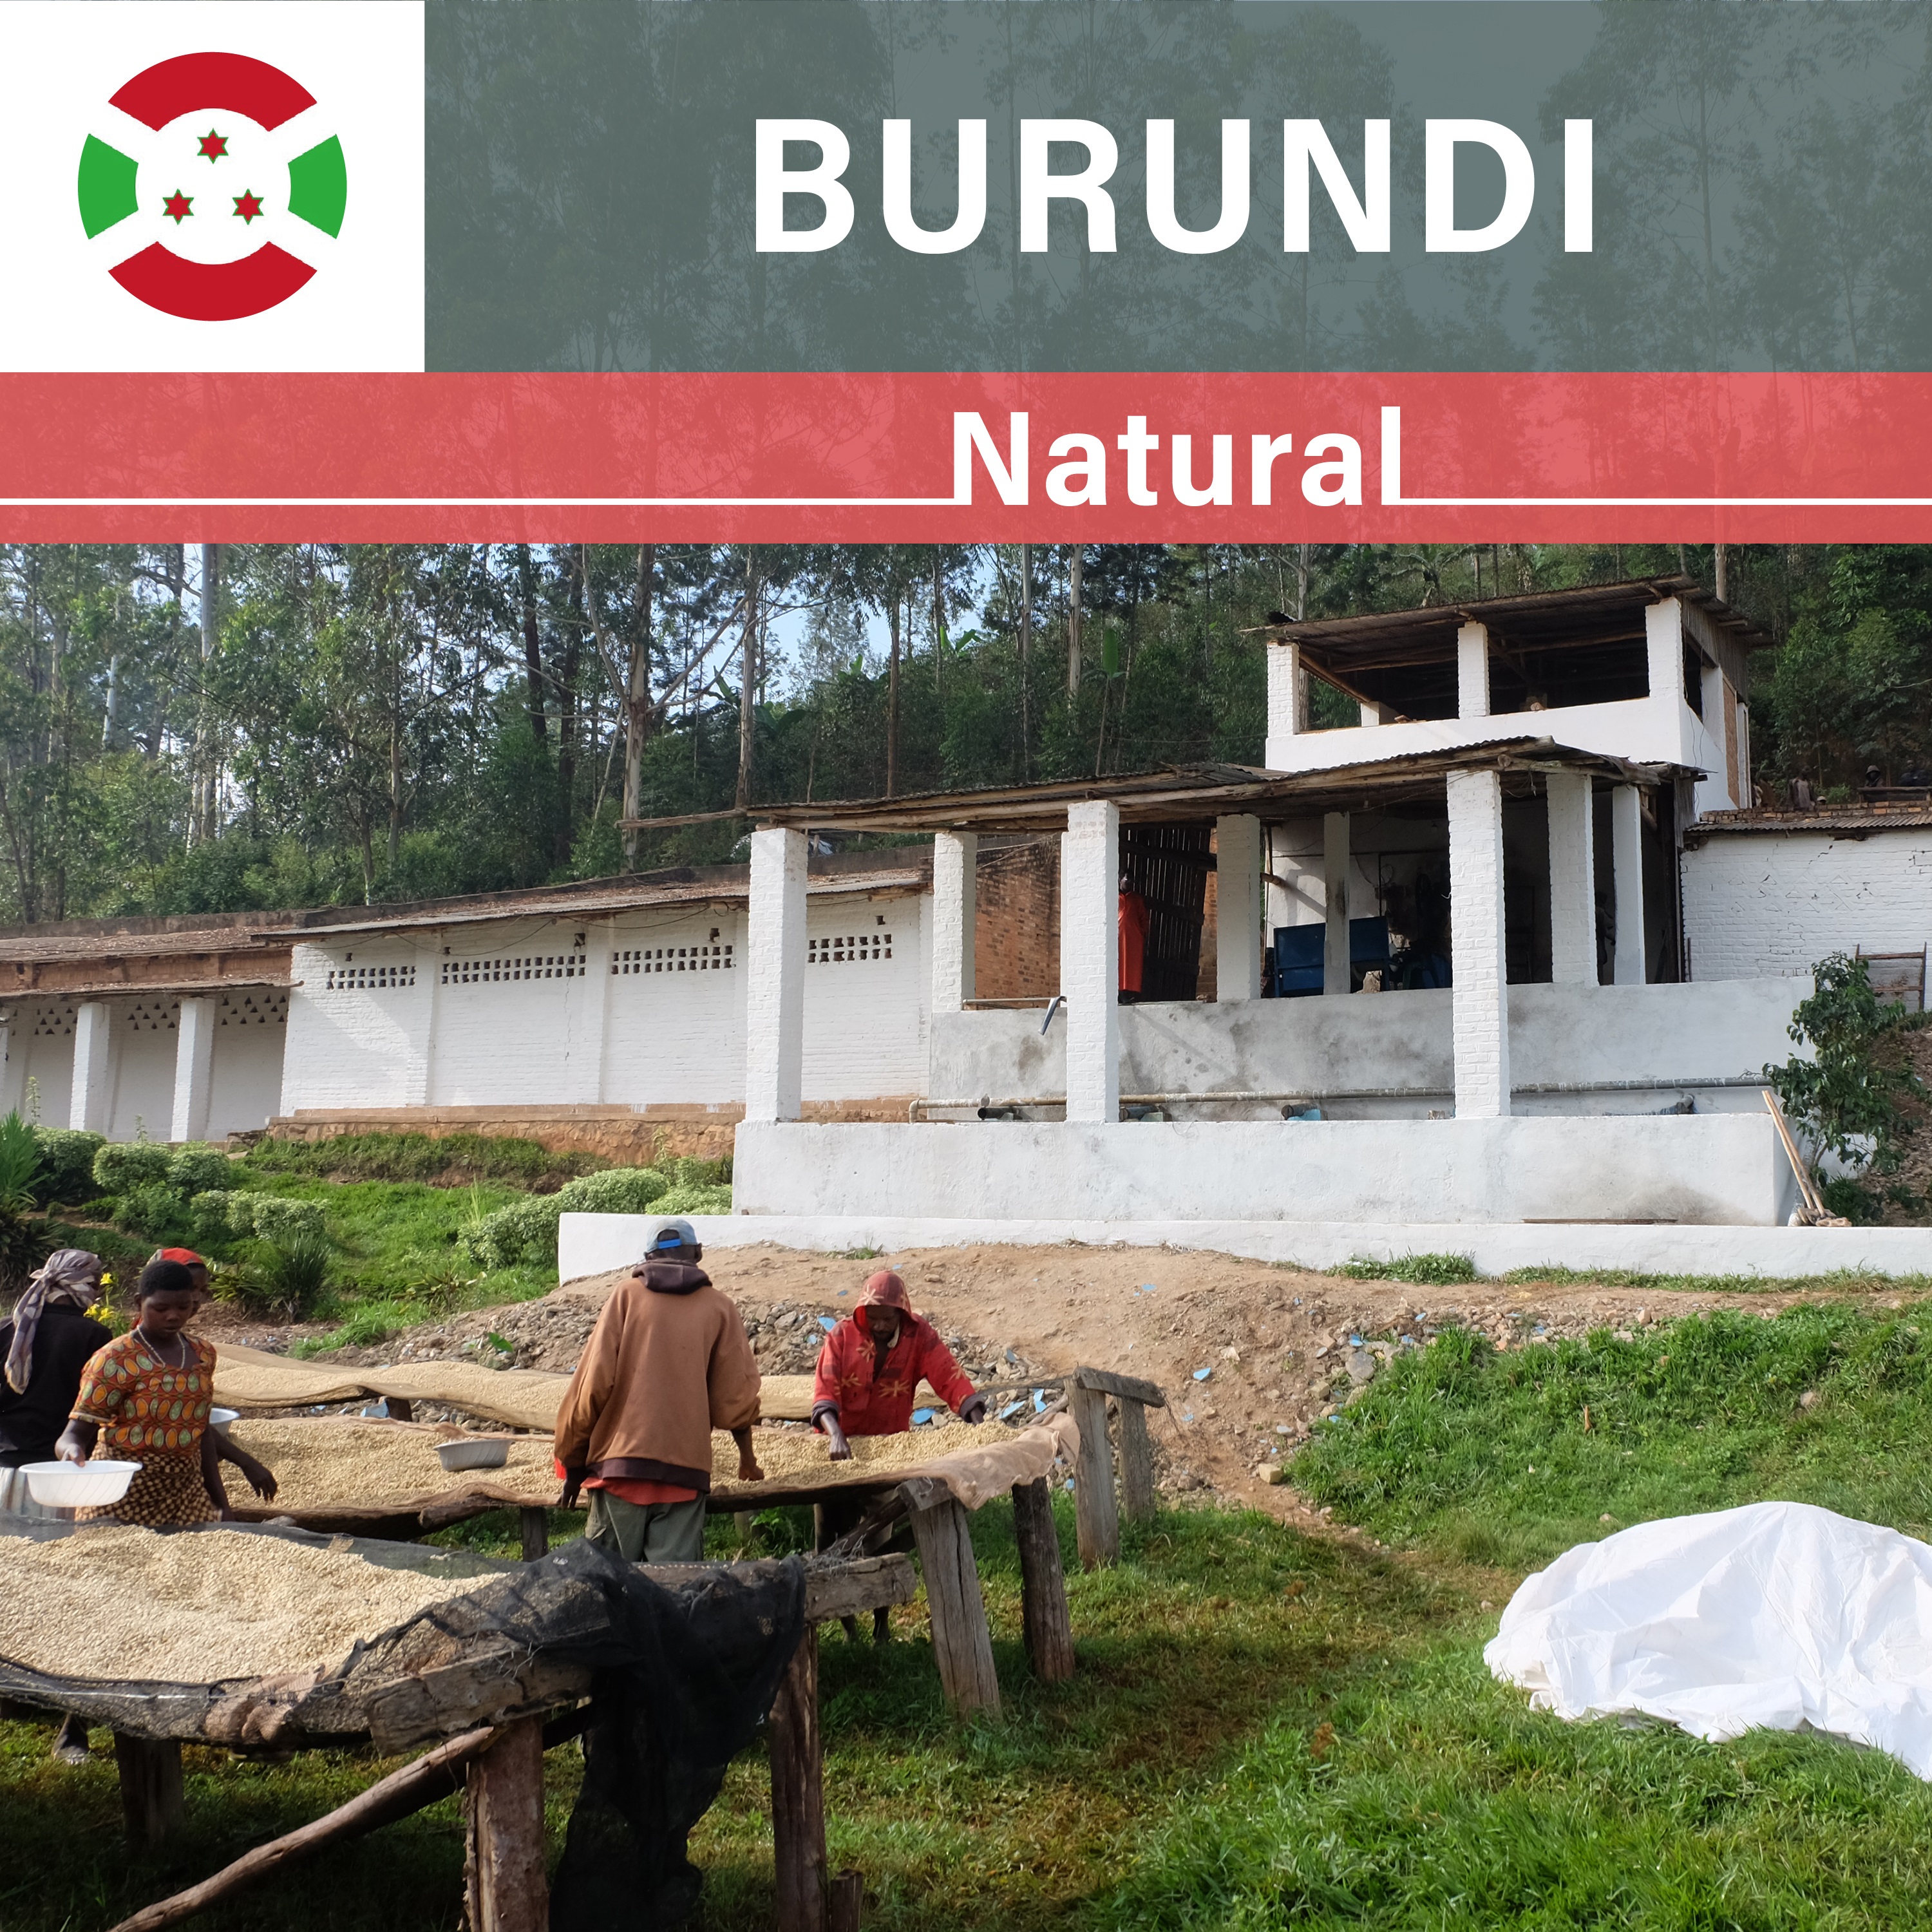 Burundi Businde Natural（21/22年クロップ）